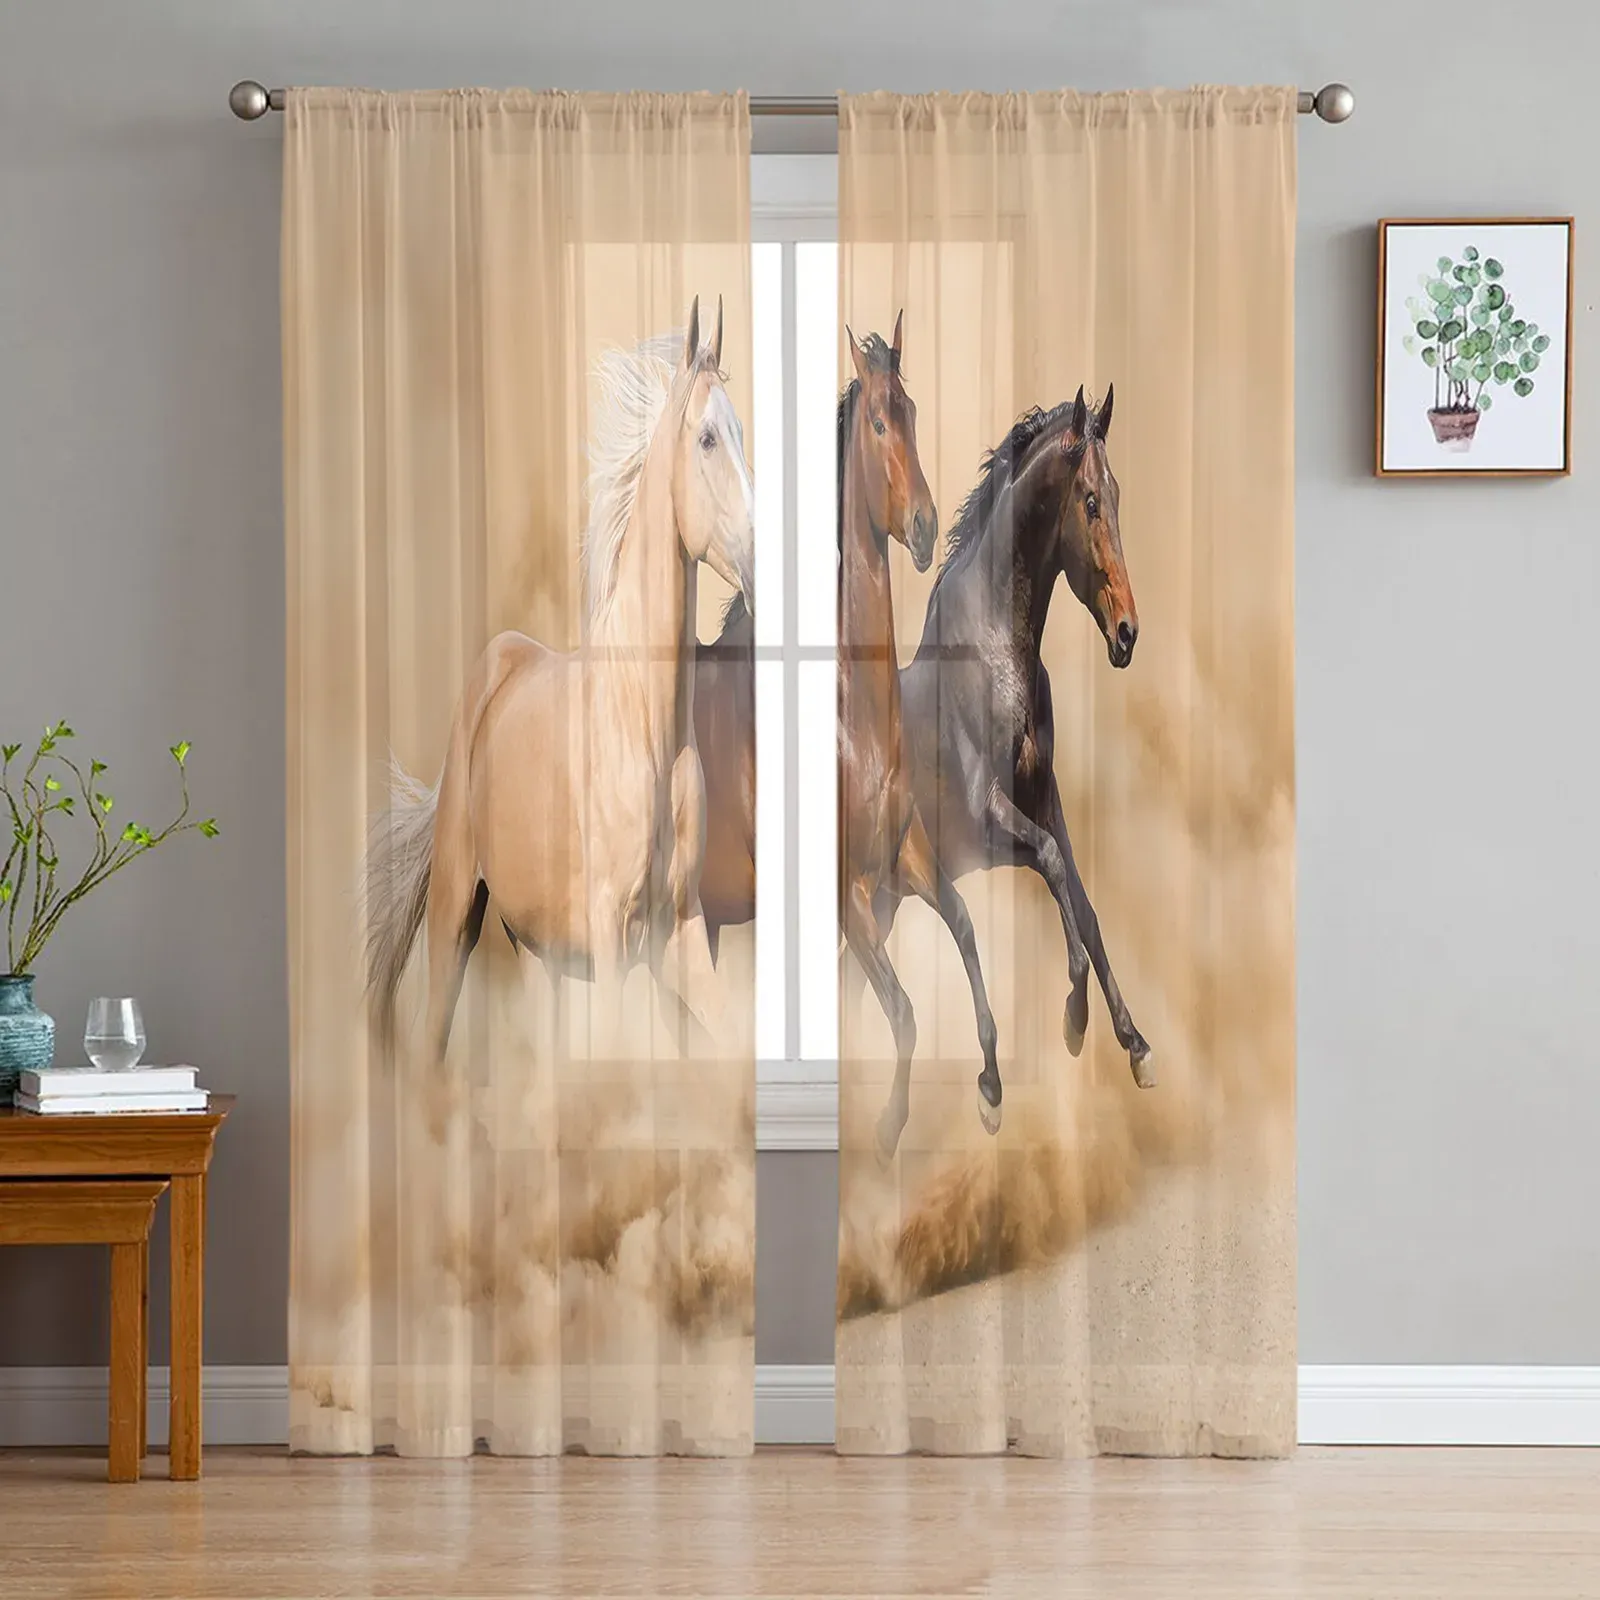 Rideaux en Tulle avec motif cheval courant, traitement de fenêtre moderne, transparent, pour cuisine, salon, chambre à coucher, décoration